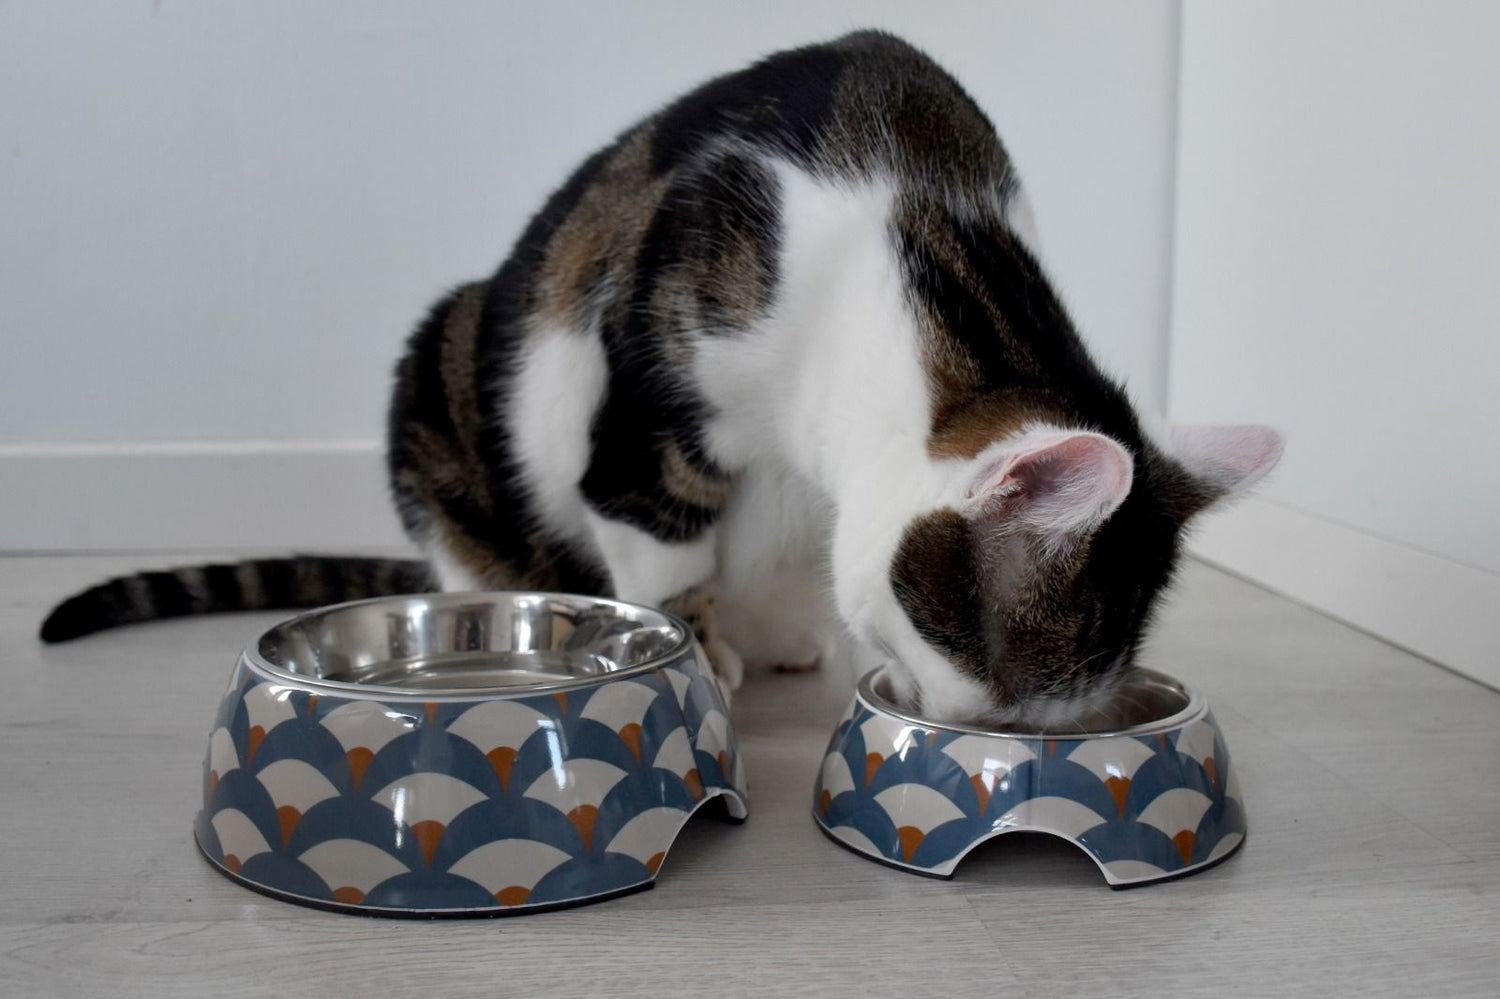 Disidratazione gatto: sintomi e rimedi